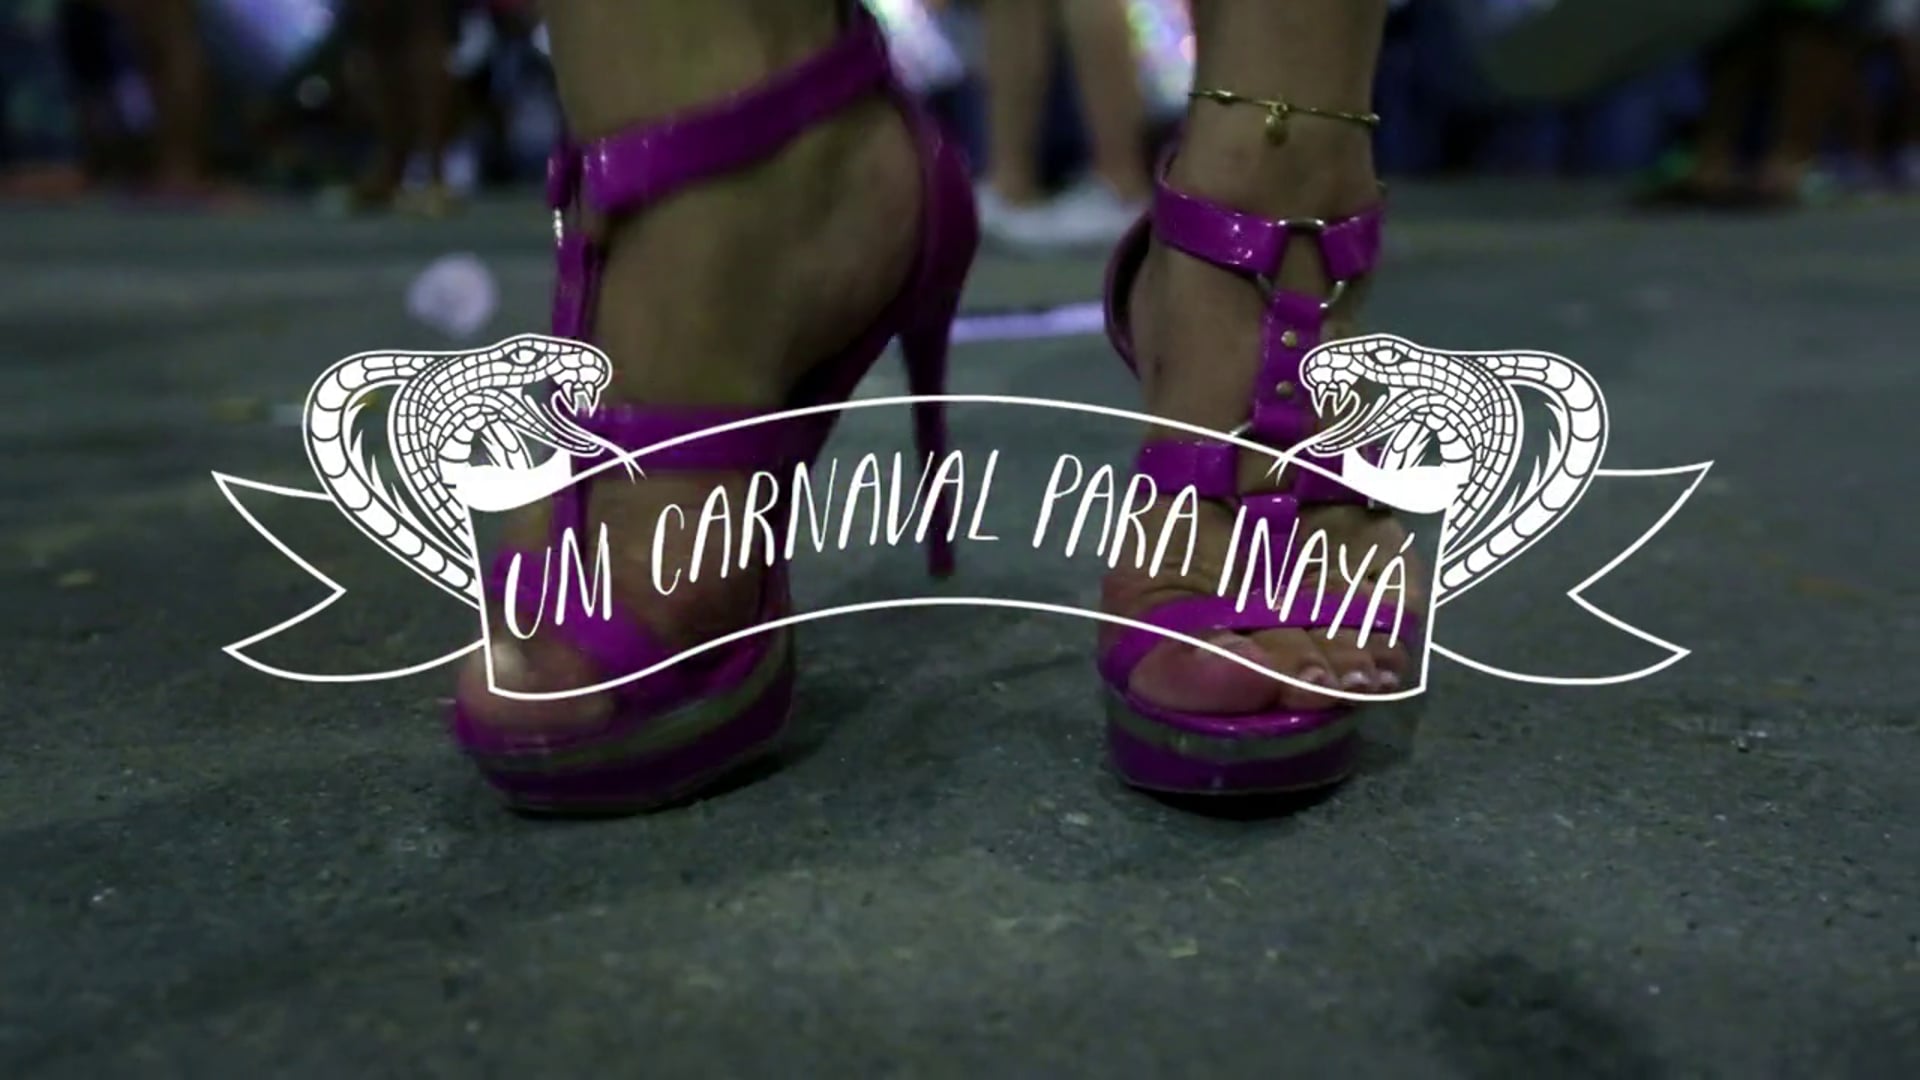 Um Carnaval para Inayá